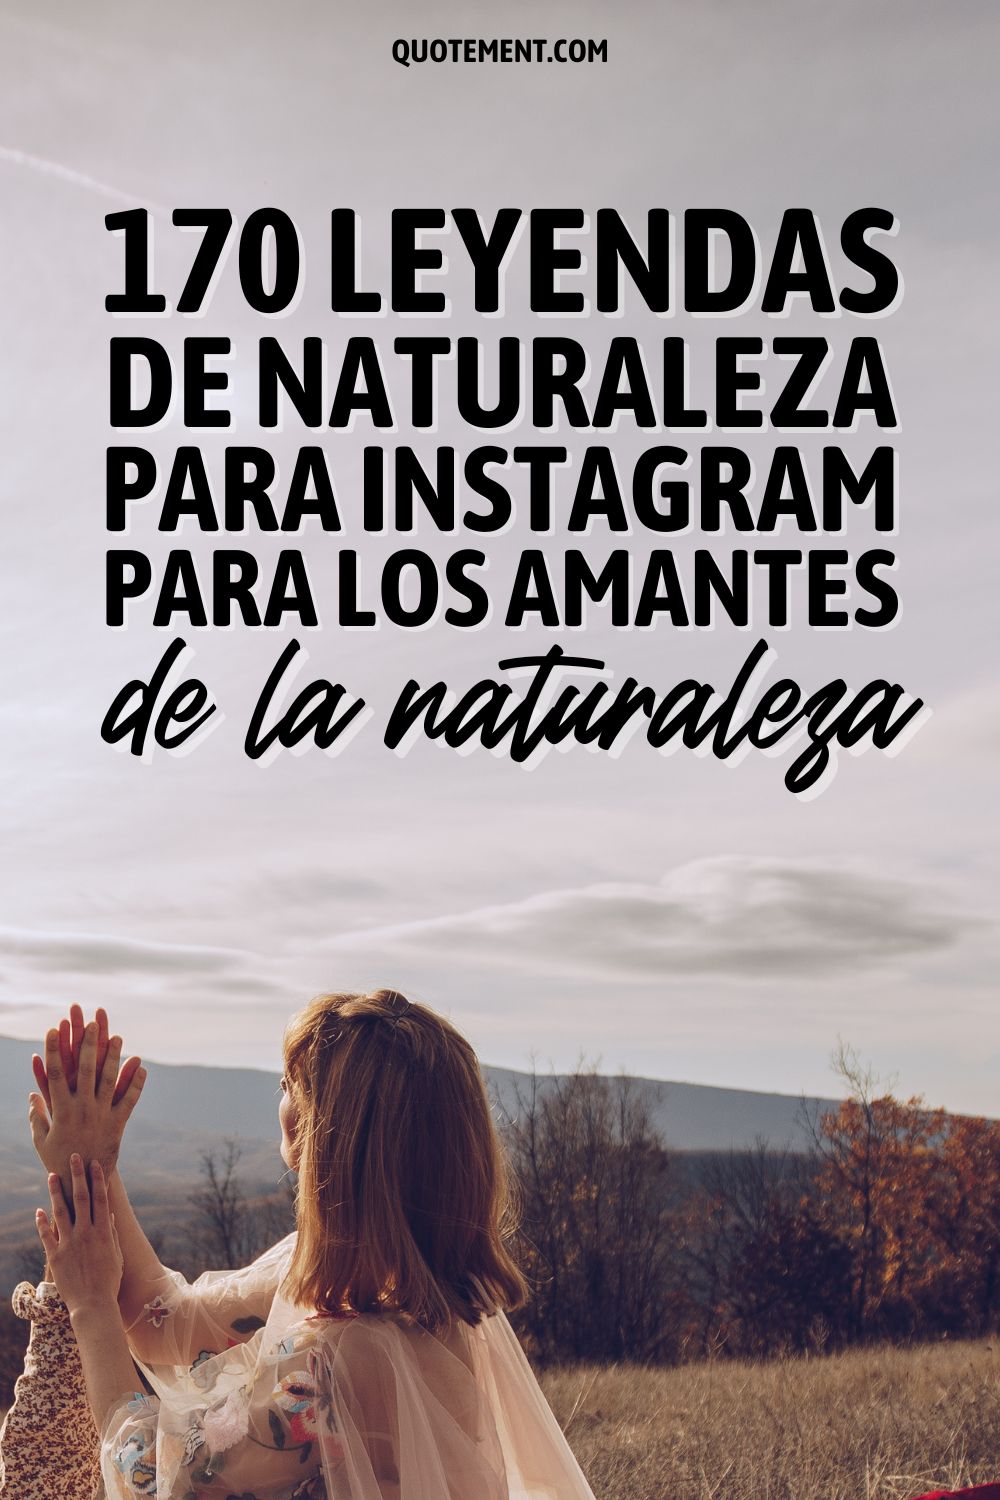 170 leyendas de naturaleza para Instagram para los amantes de la naturaleza